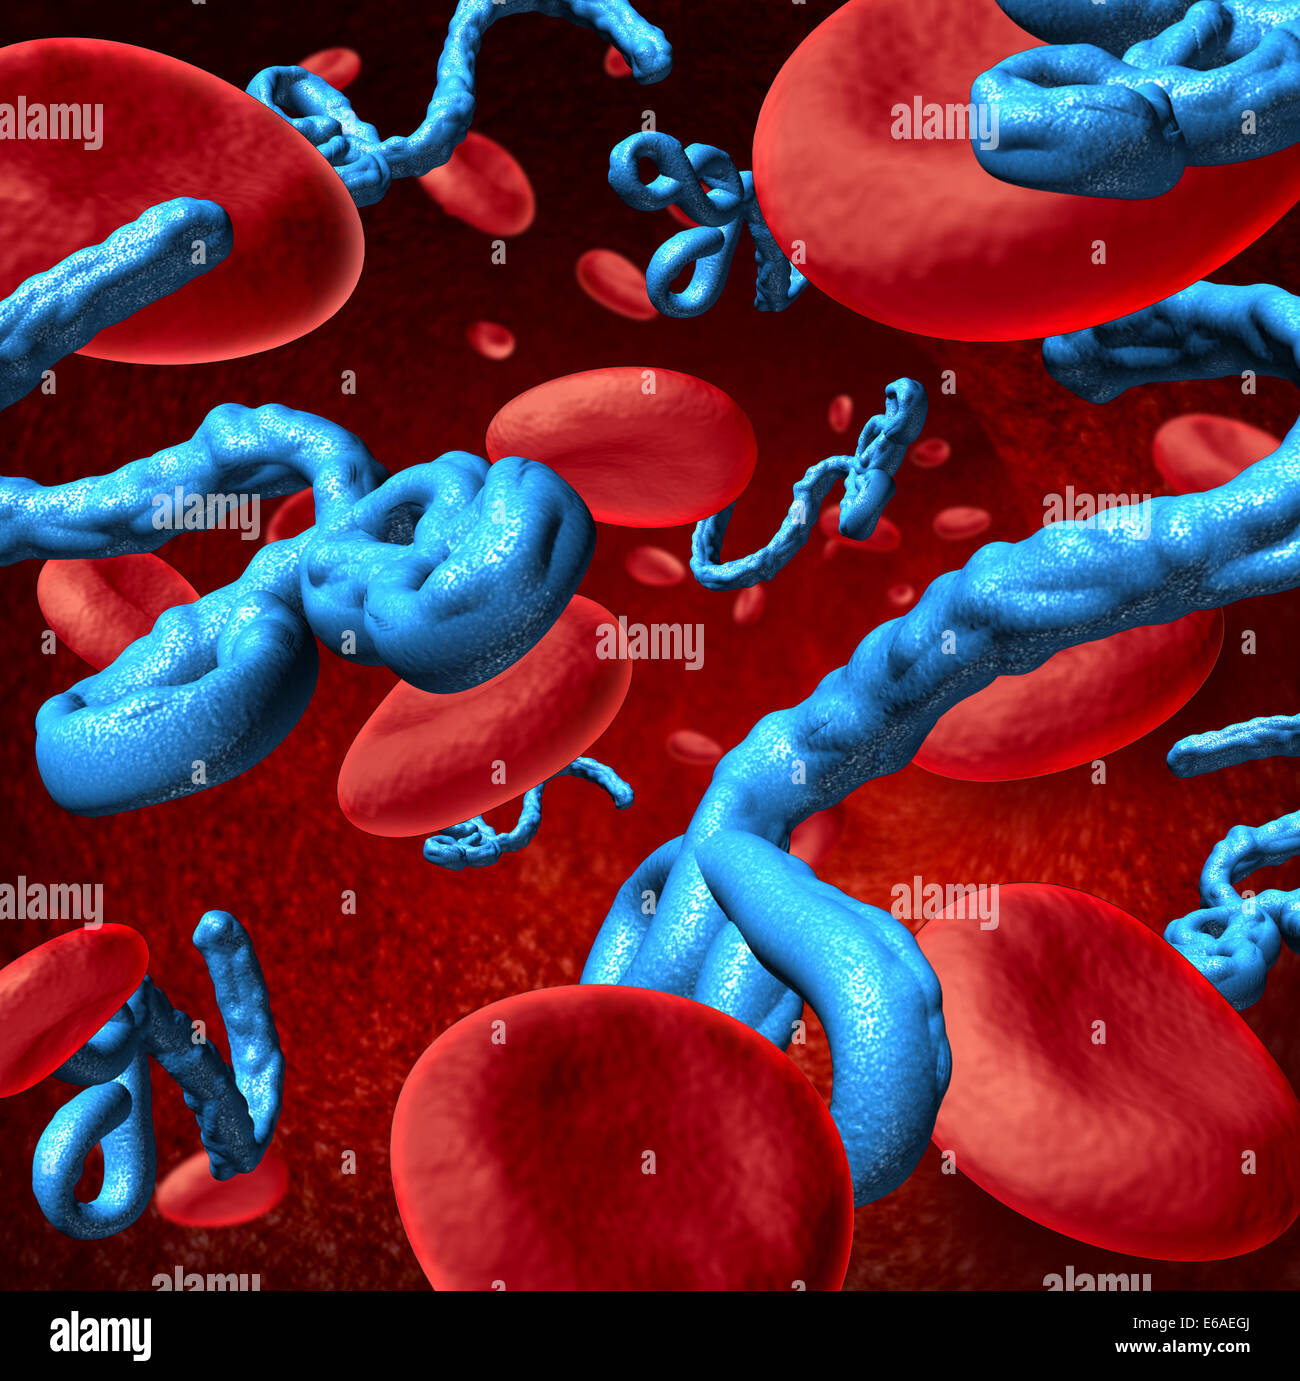 Le virus de la maladie d'Ebola dans le corps humain en tant que concept médical microbes en trois dimensions avec des cellules de sang en tant que symbole de la santé les dangers d'une infection à partir d'un micro-organisme mortel. Banque D'Images